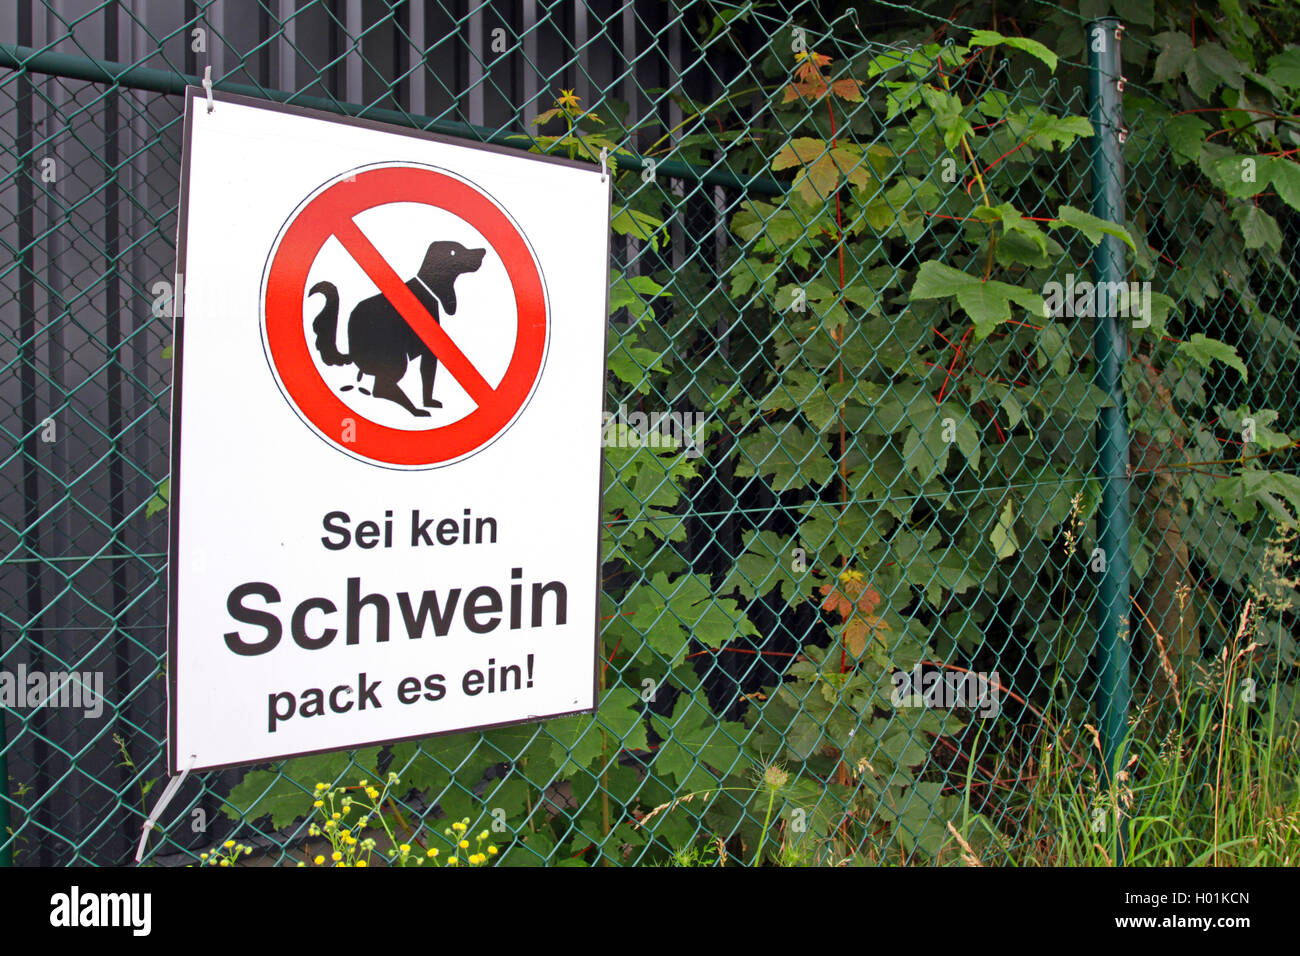 Firmar contra la caca de perro, Alemania Foto de stock